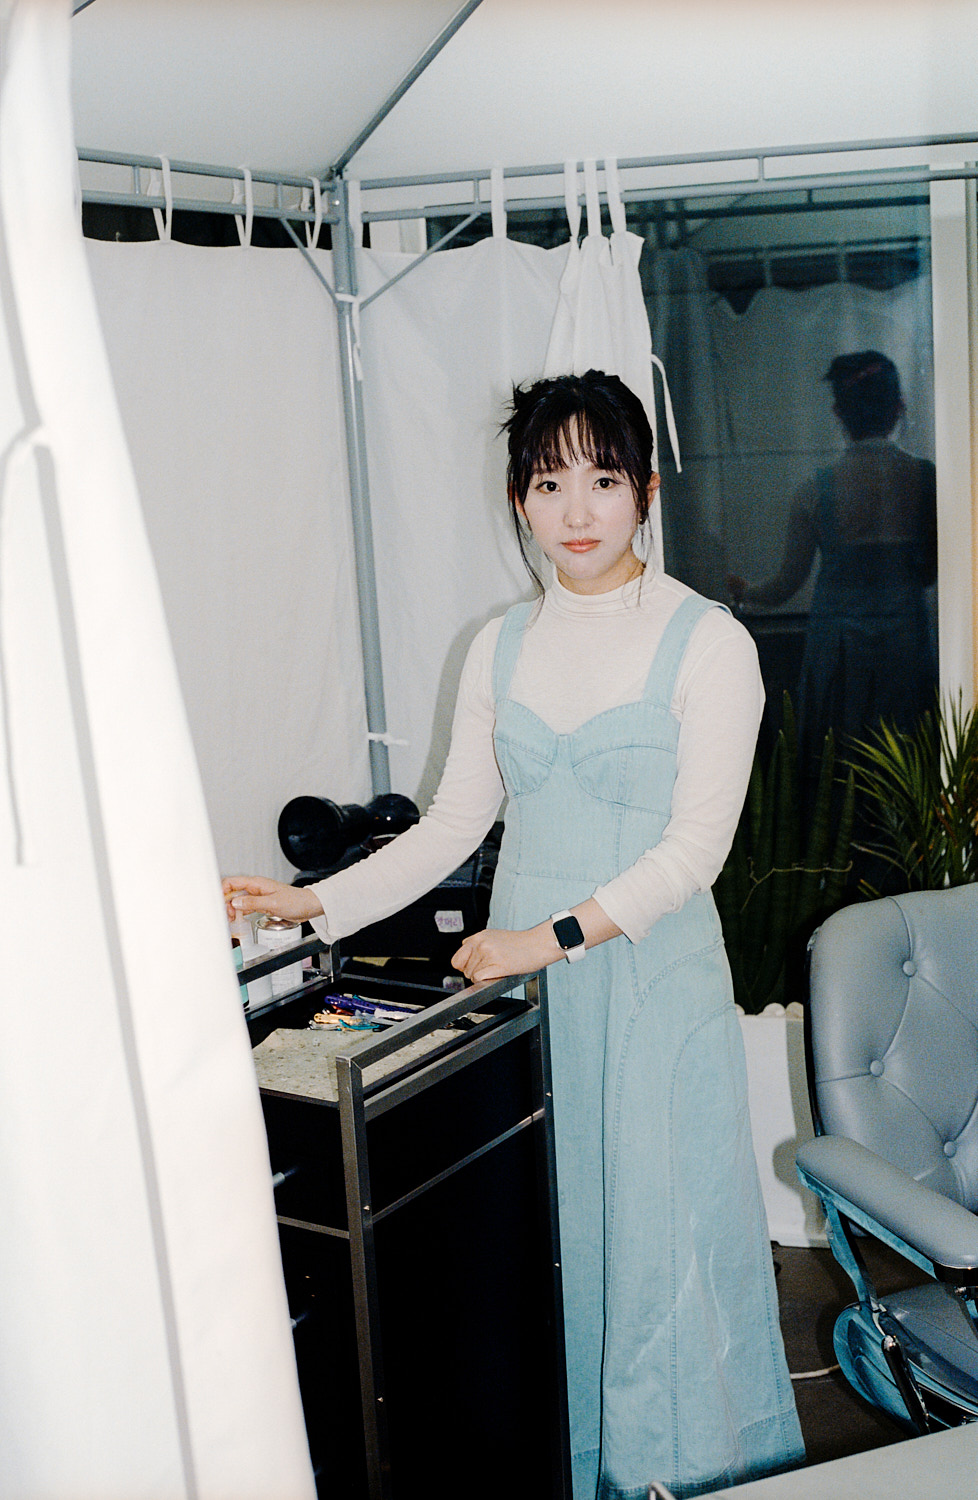 hair stylist jihee park stands in her salon wearing a denim dress